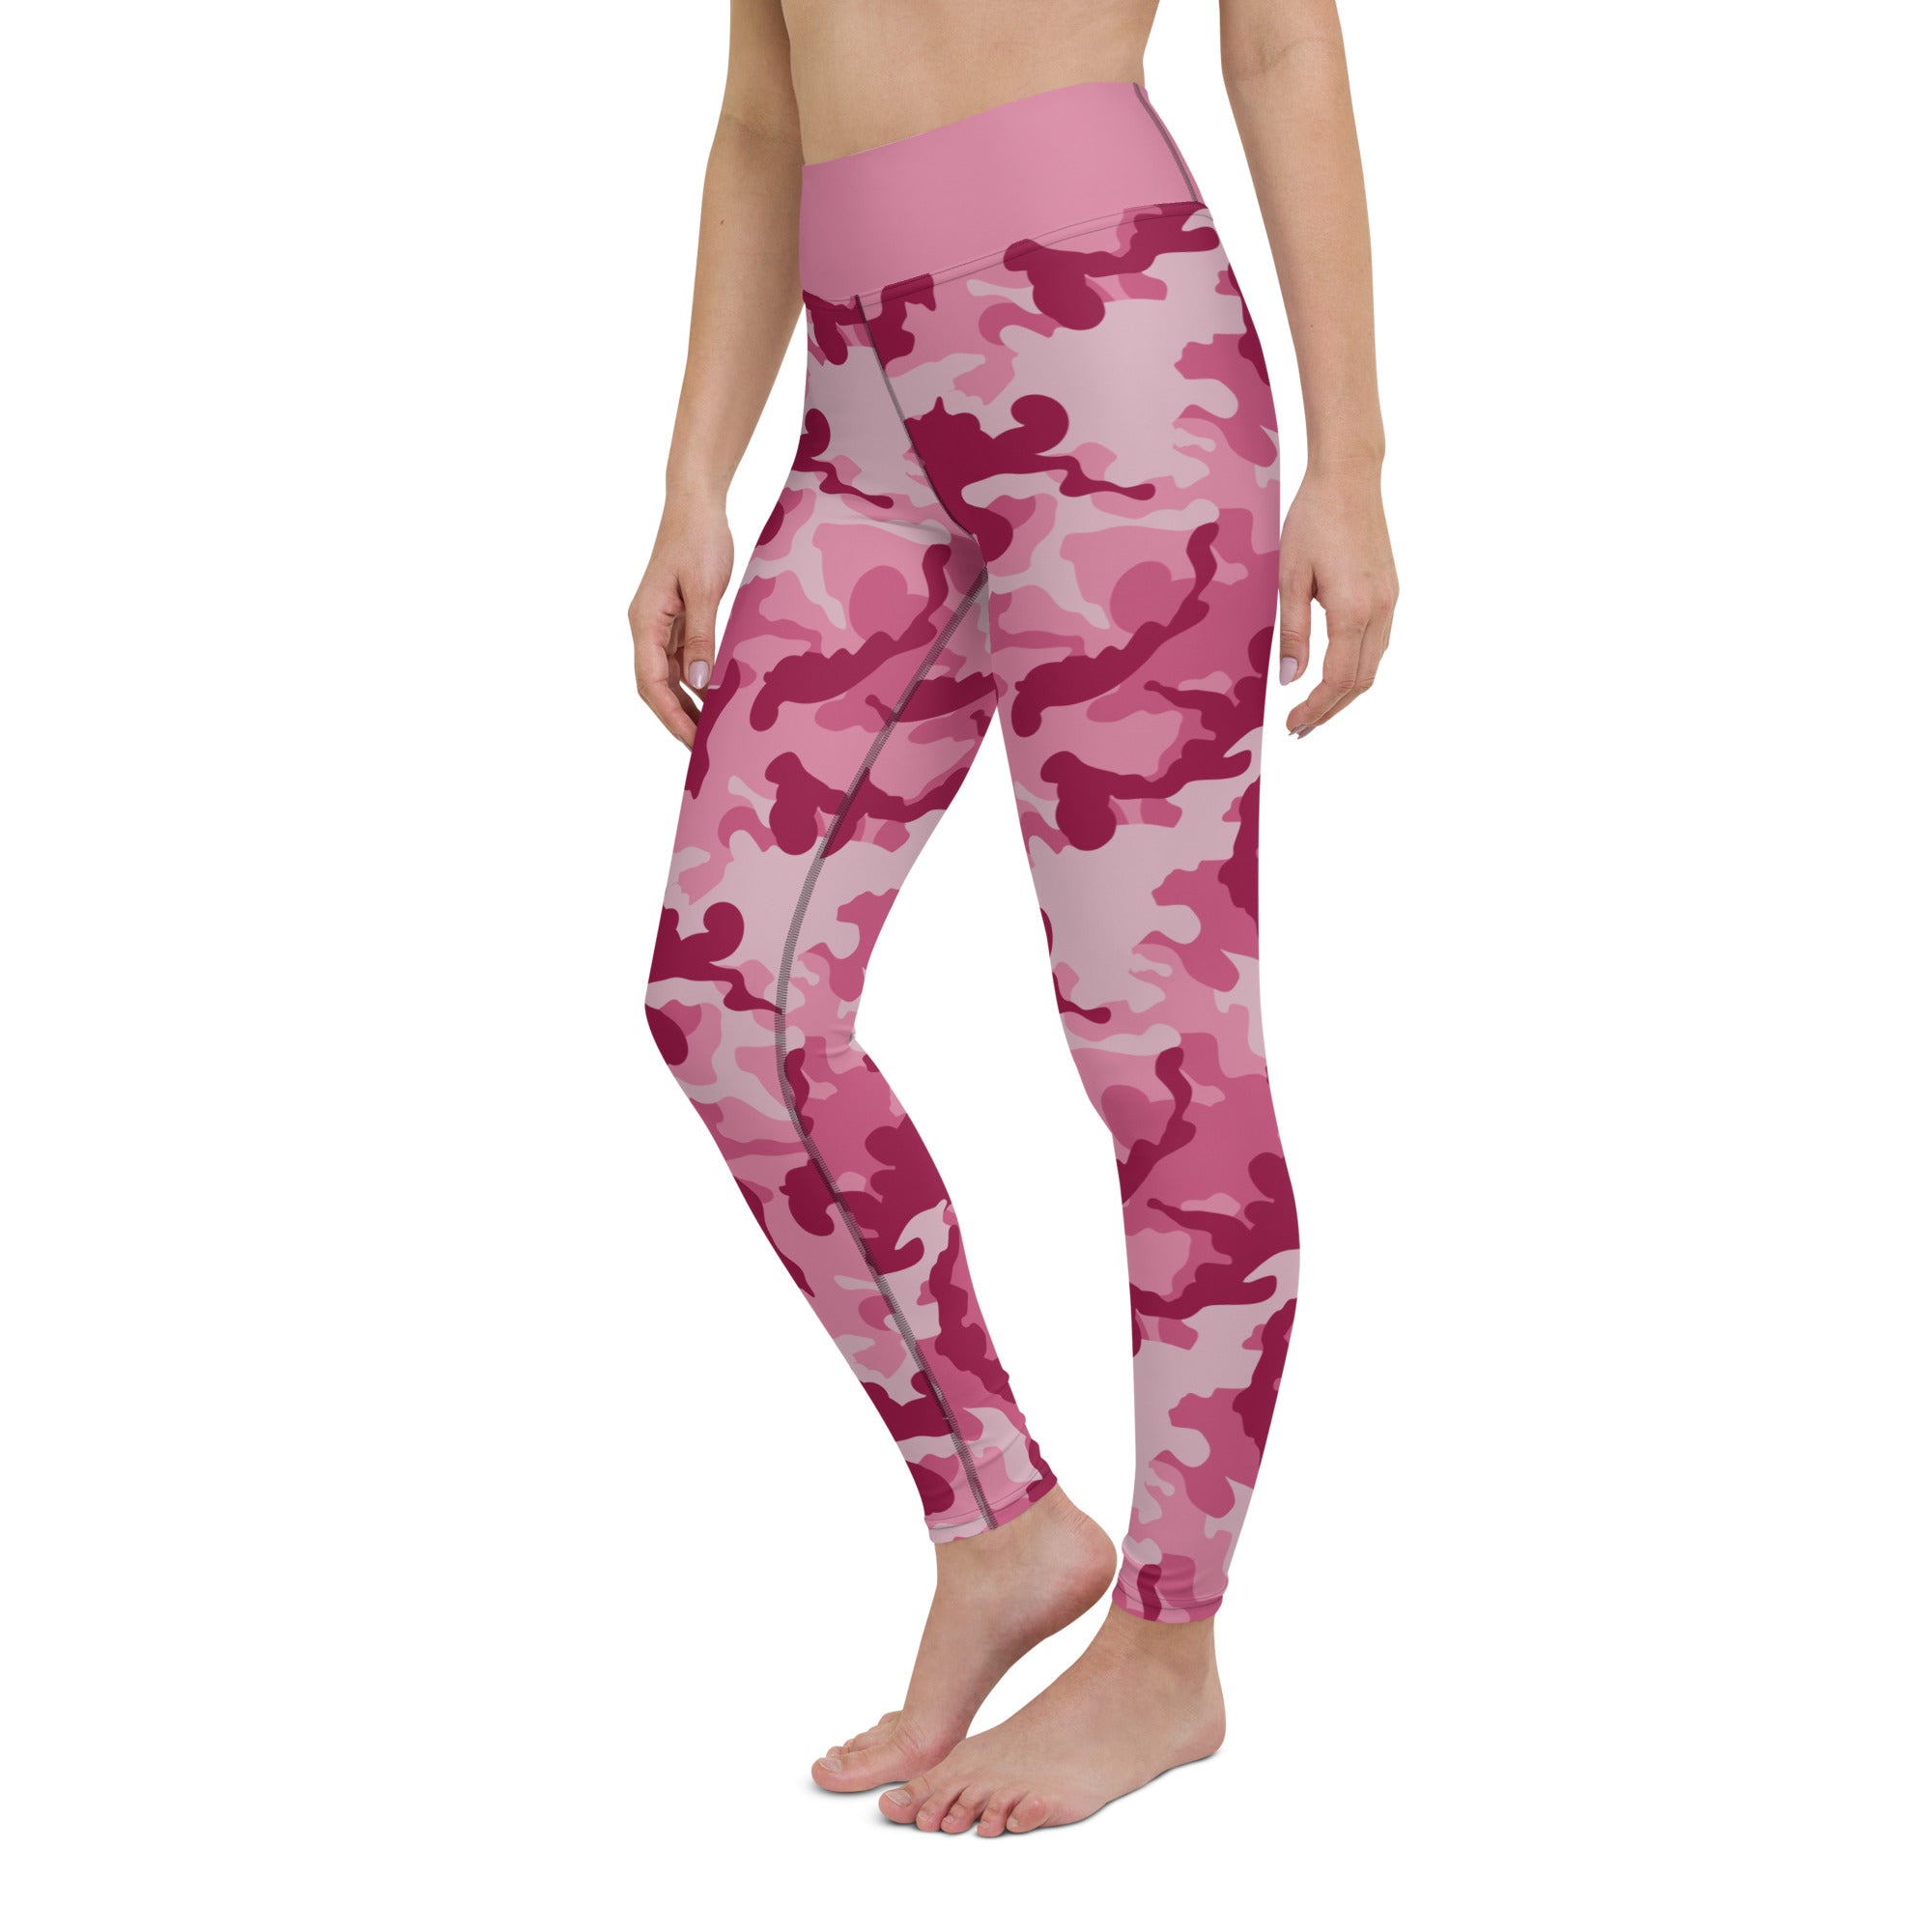 Yoga Leggings- Camo Dark Pink